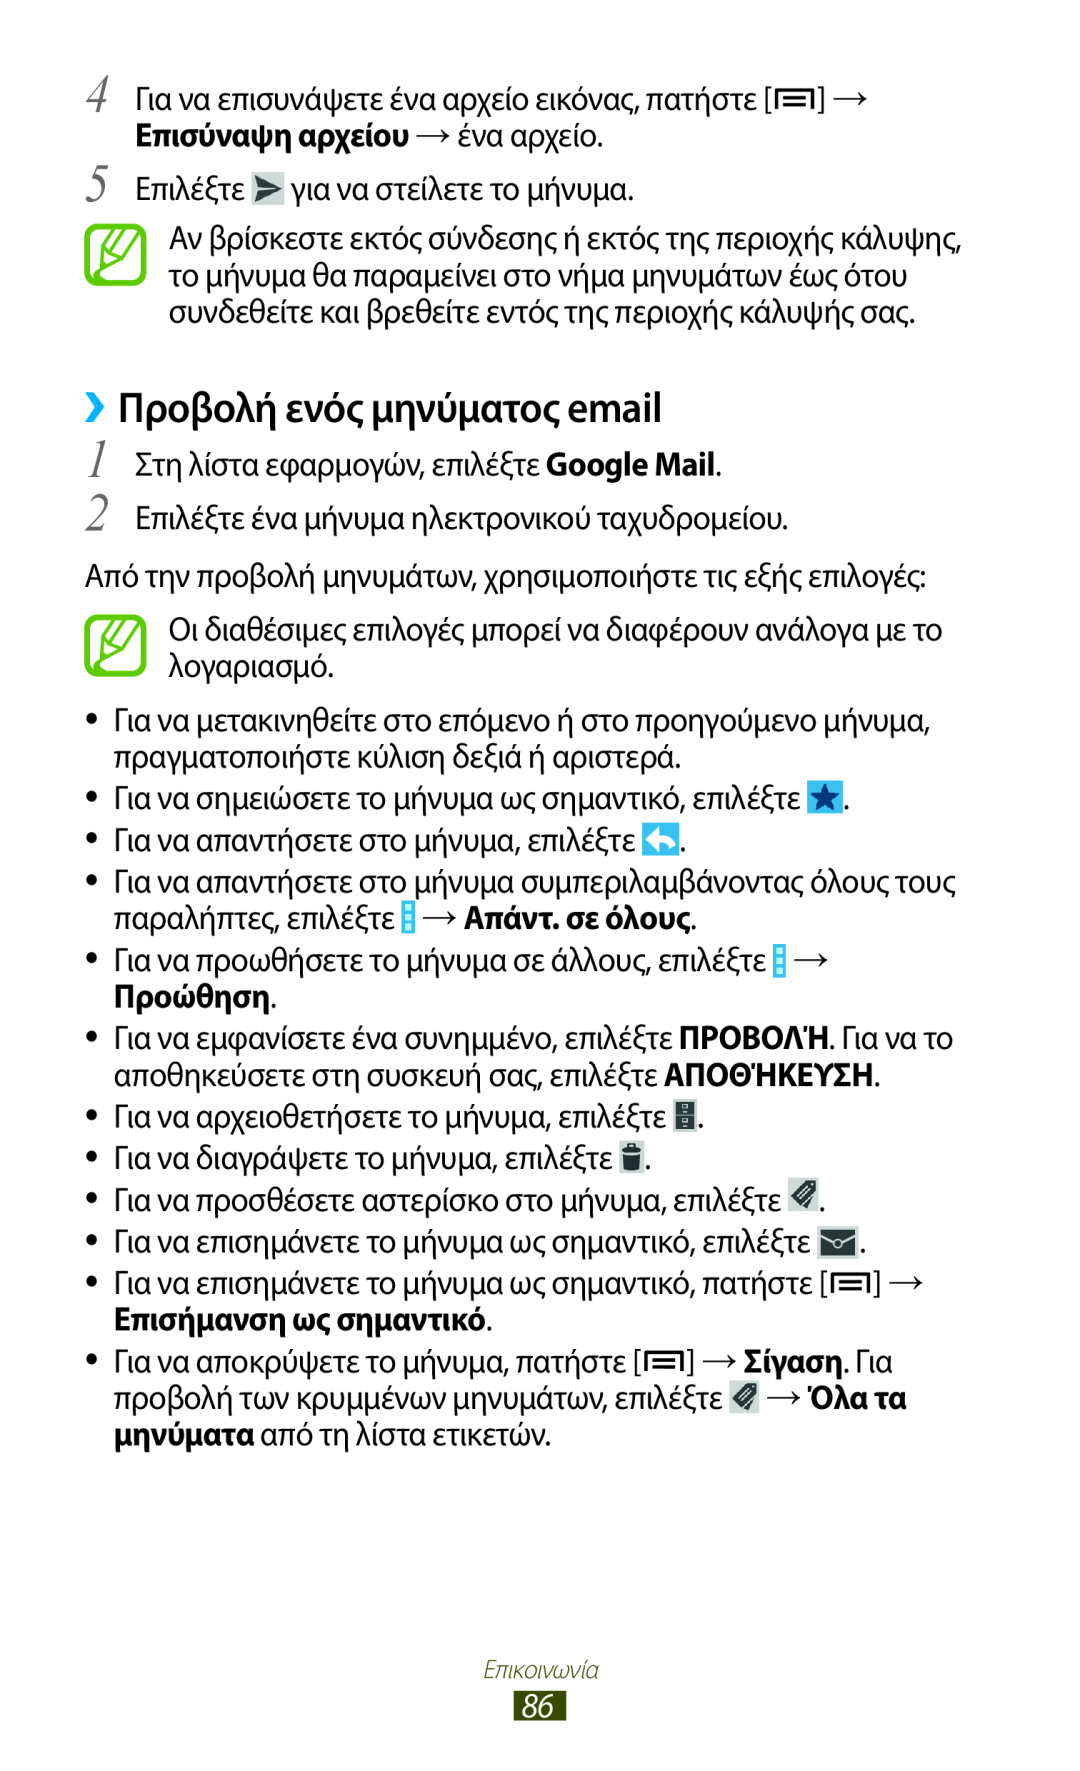 Samsung GT-N7000ZBEEUR, GT-N7000ZBAEUR, GT-N7000RWAEUR, GT-N7000RWAVGR manual ››Προβολή ενός μηνύματος email, →Απάντ. σε όλους 